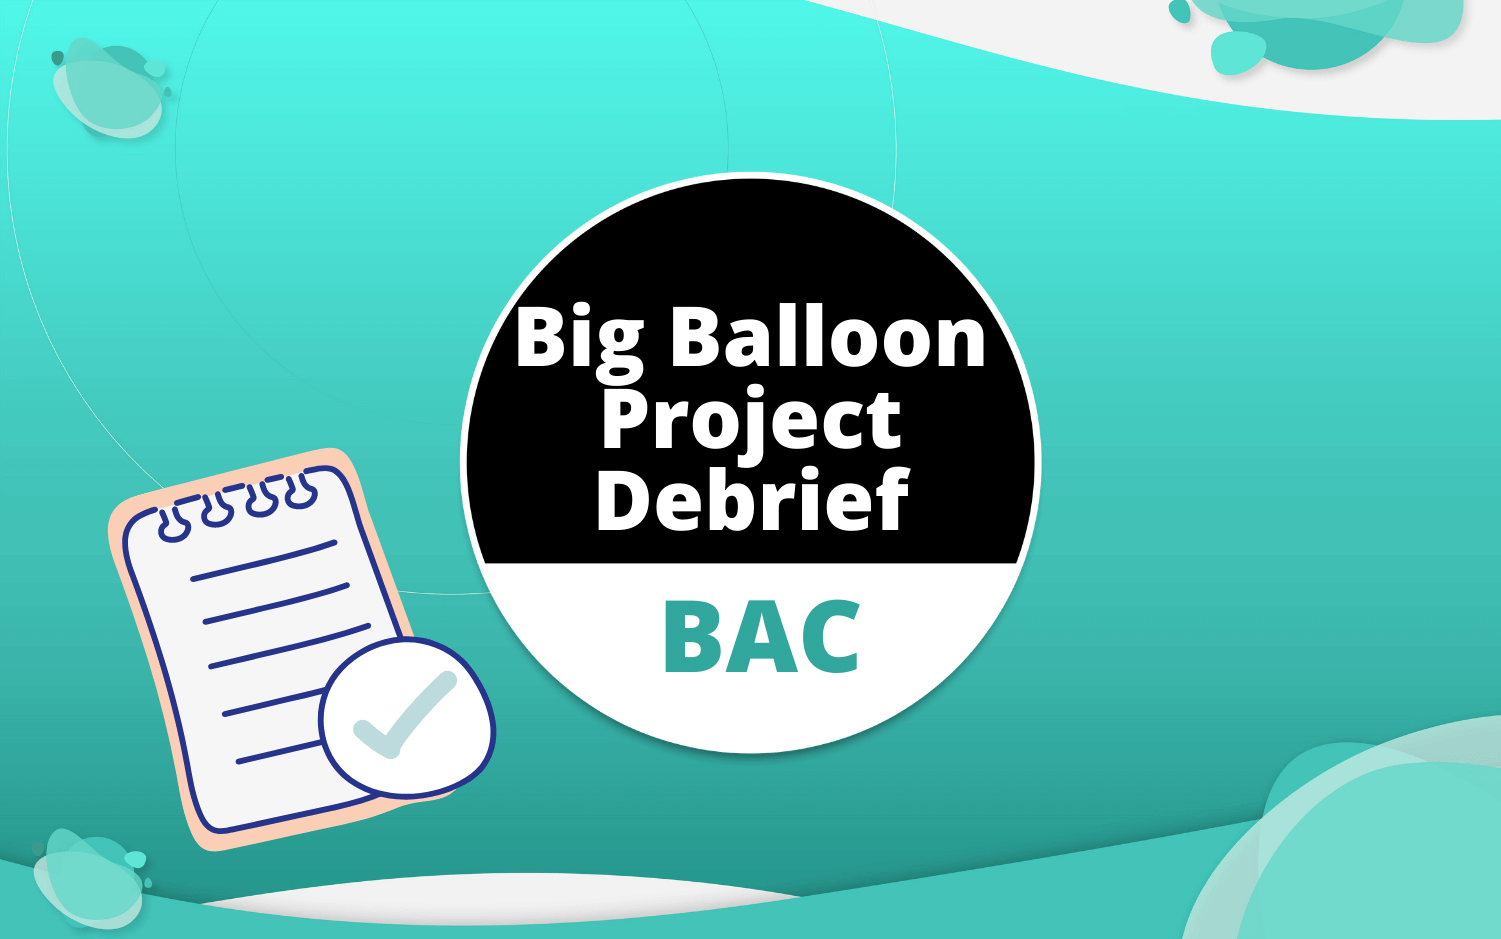 Big Balloon Project Debrief